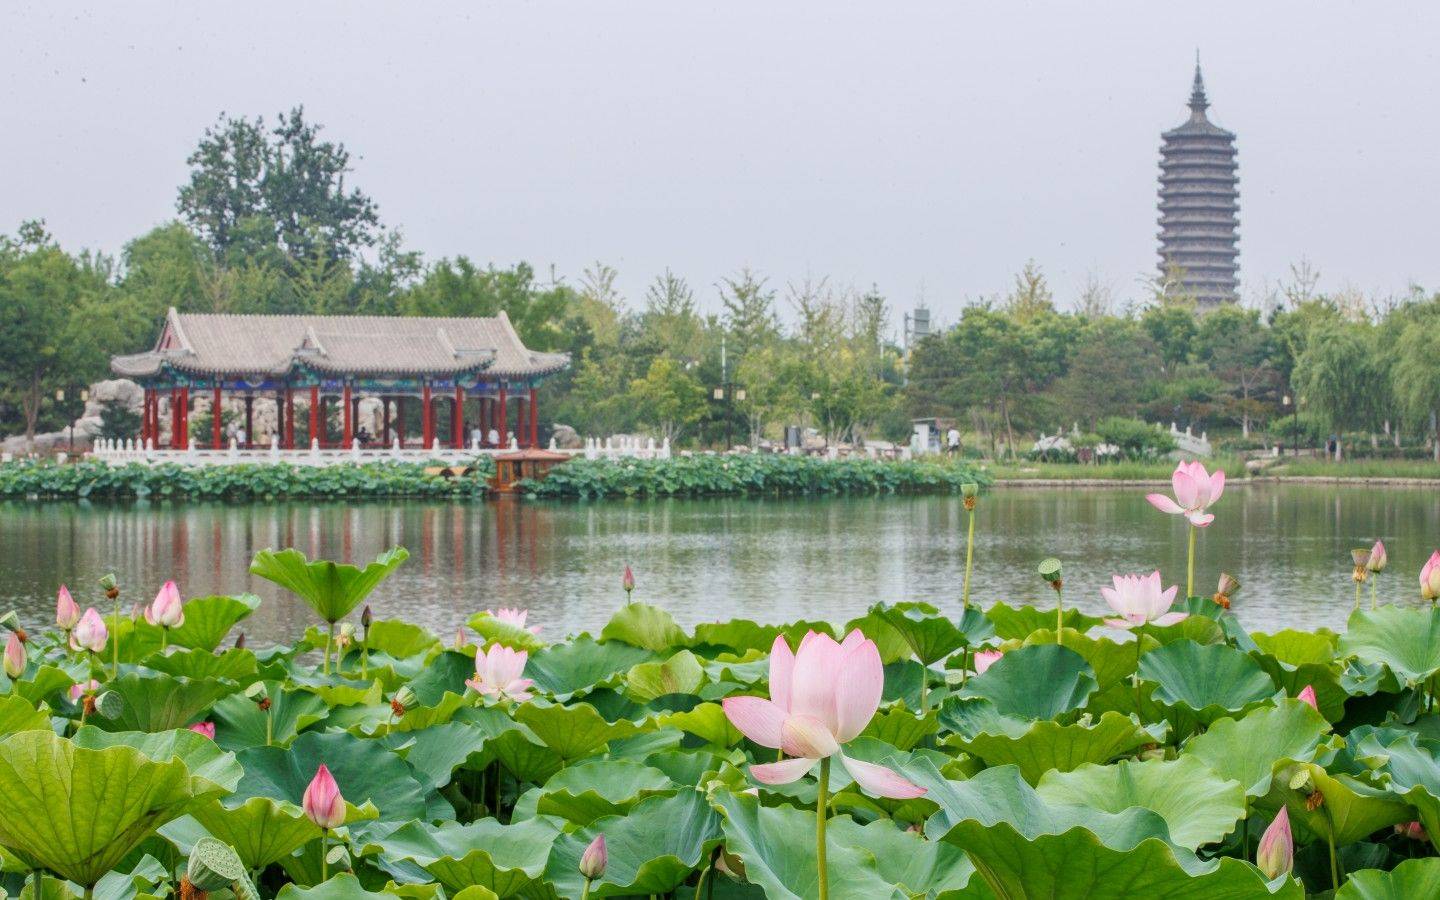 西海子公园(葫芦湖景点)也是北京(通州)大运河文化旅游景区的核心景点